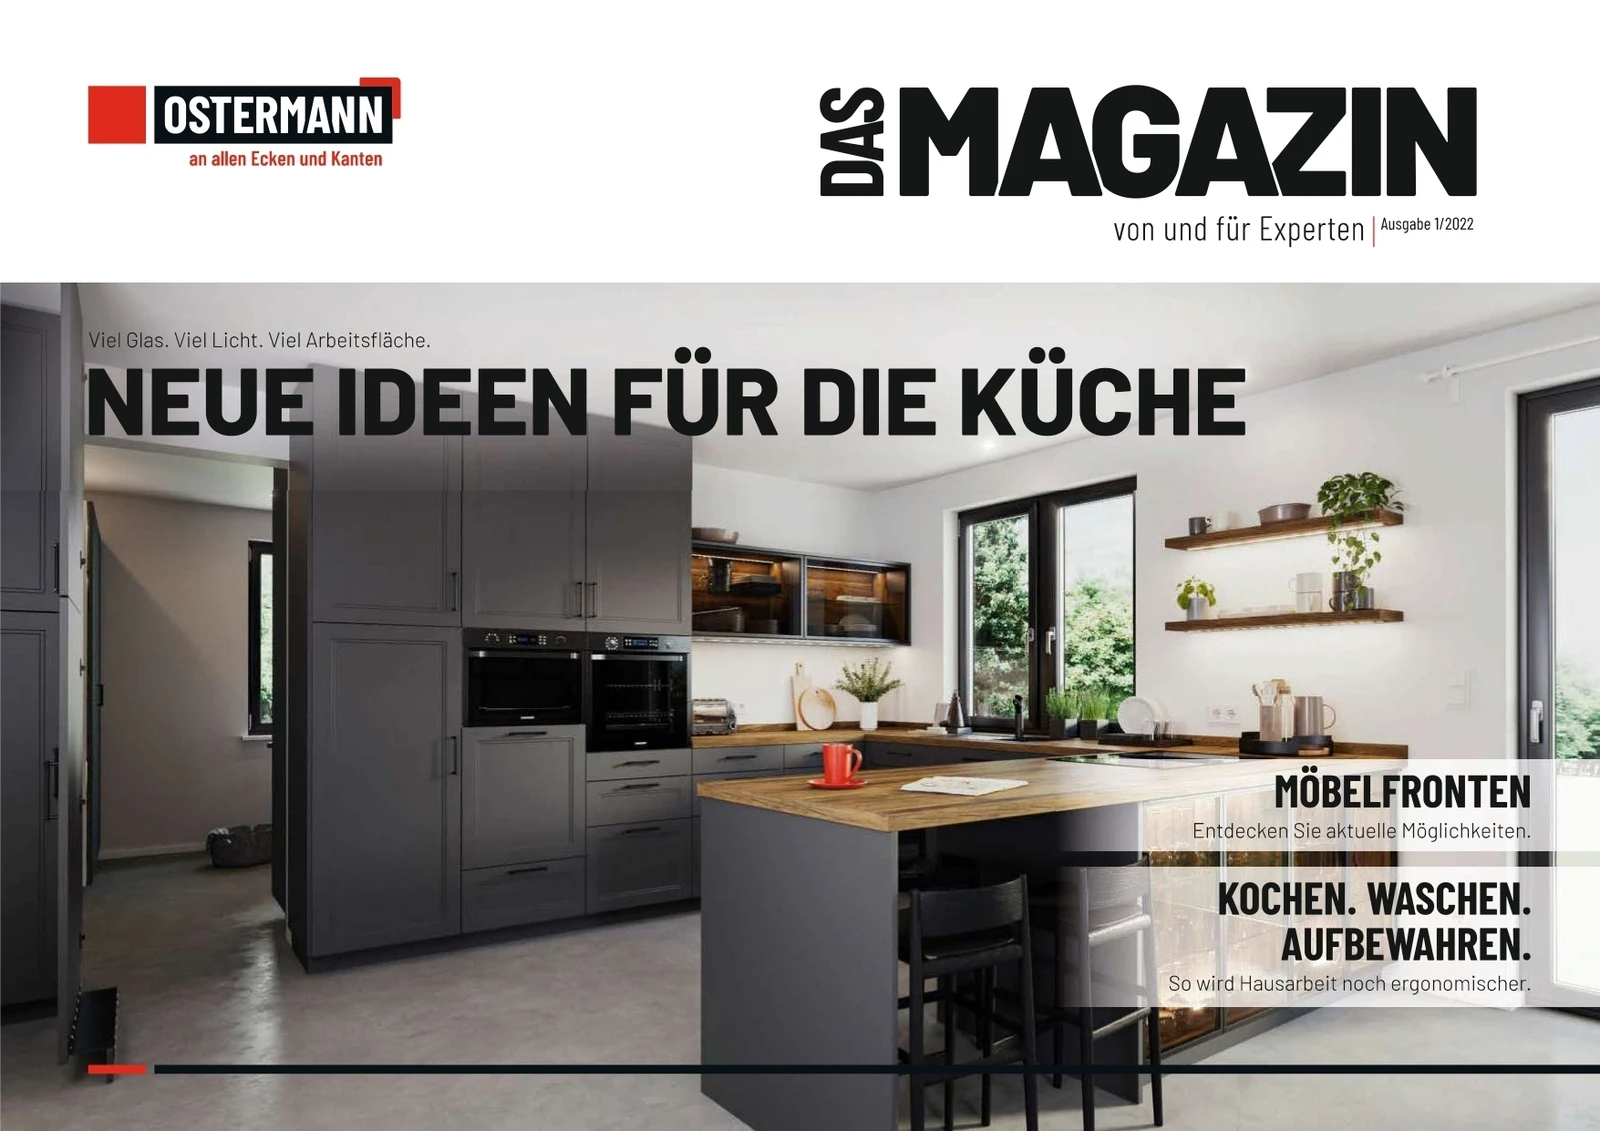 NEUE IDEEN FÜR DIE KÜCHE - Das Magazine 1 2022 Ostermann